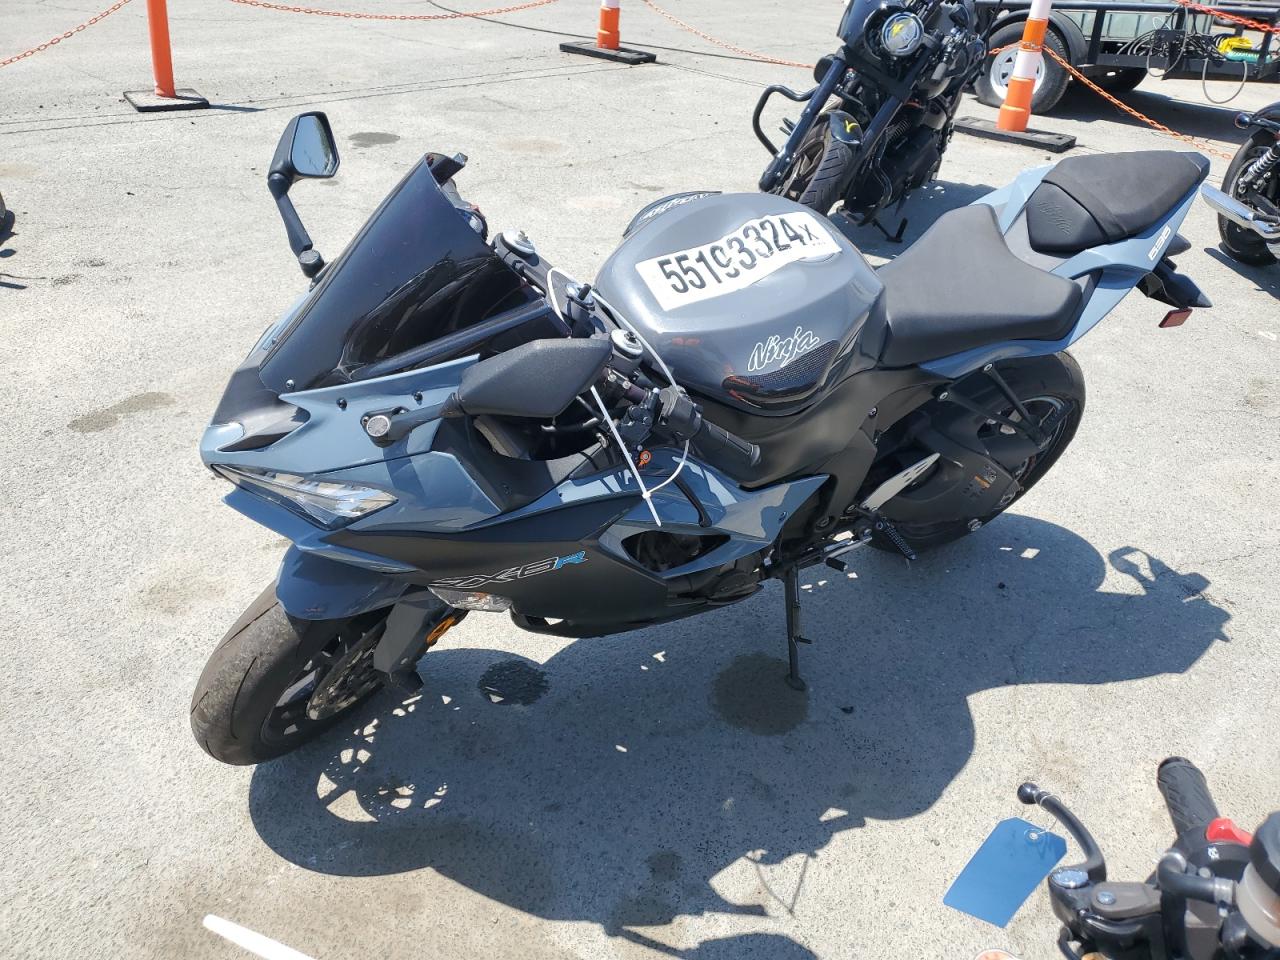 2019 Kawasaki Ninja ZX-6R at CA - San Diego, Copart lot 55193324 